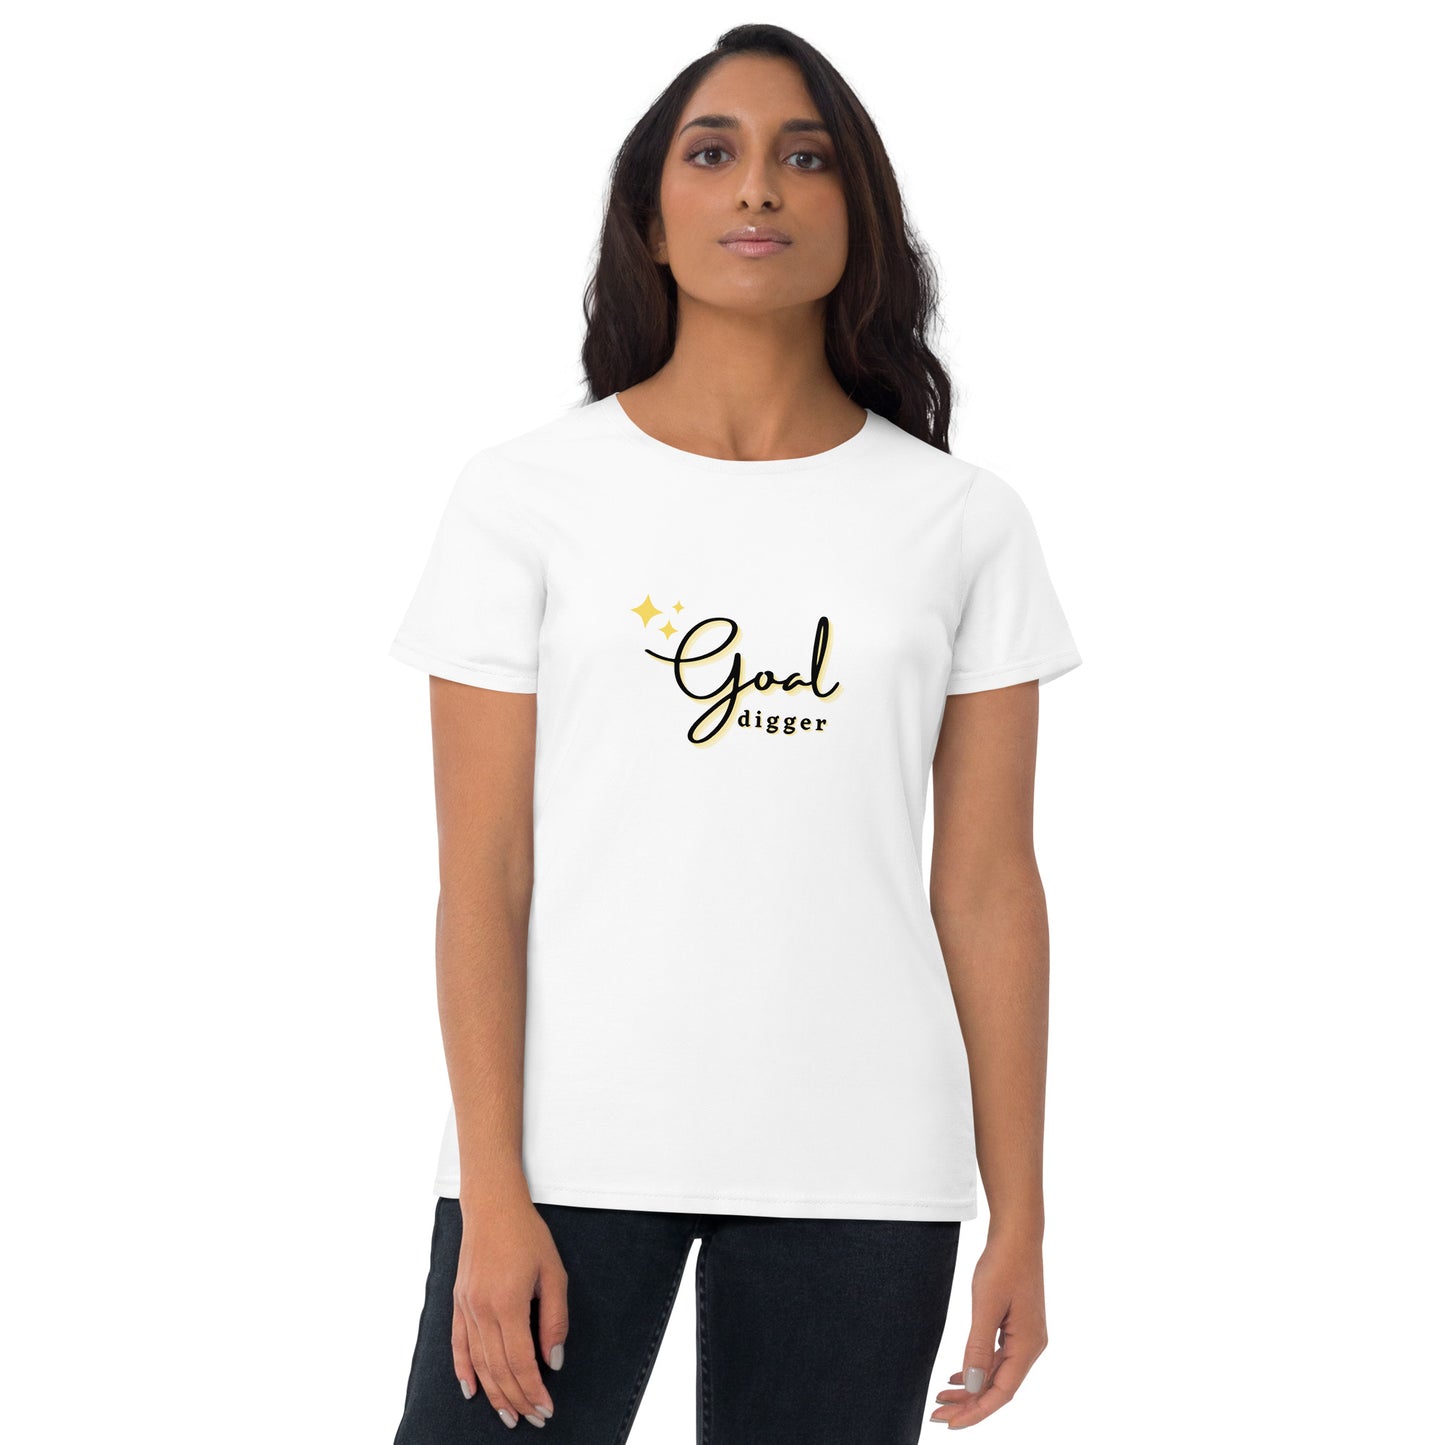 GOAL DIGGER Women's short sleeve t-shirt